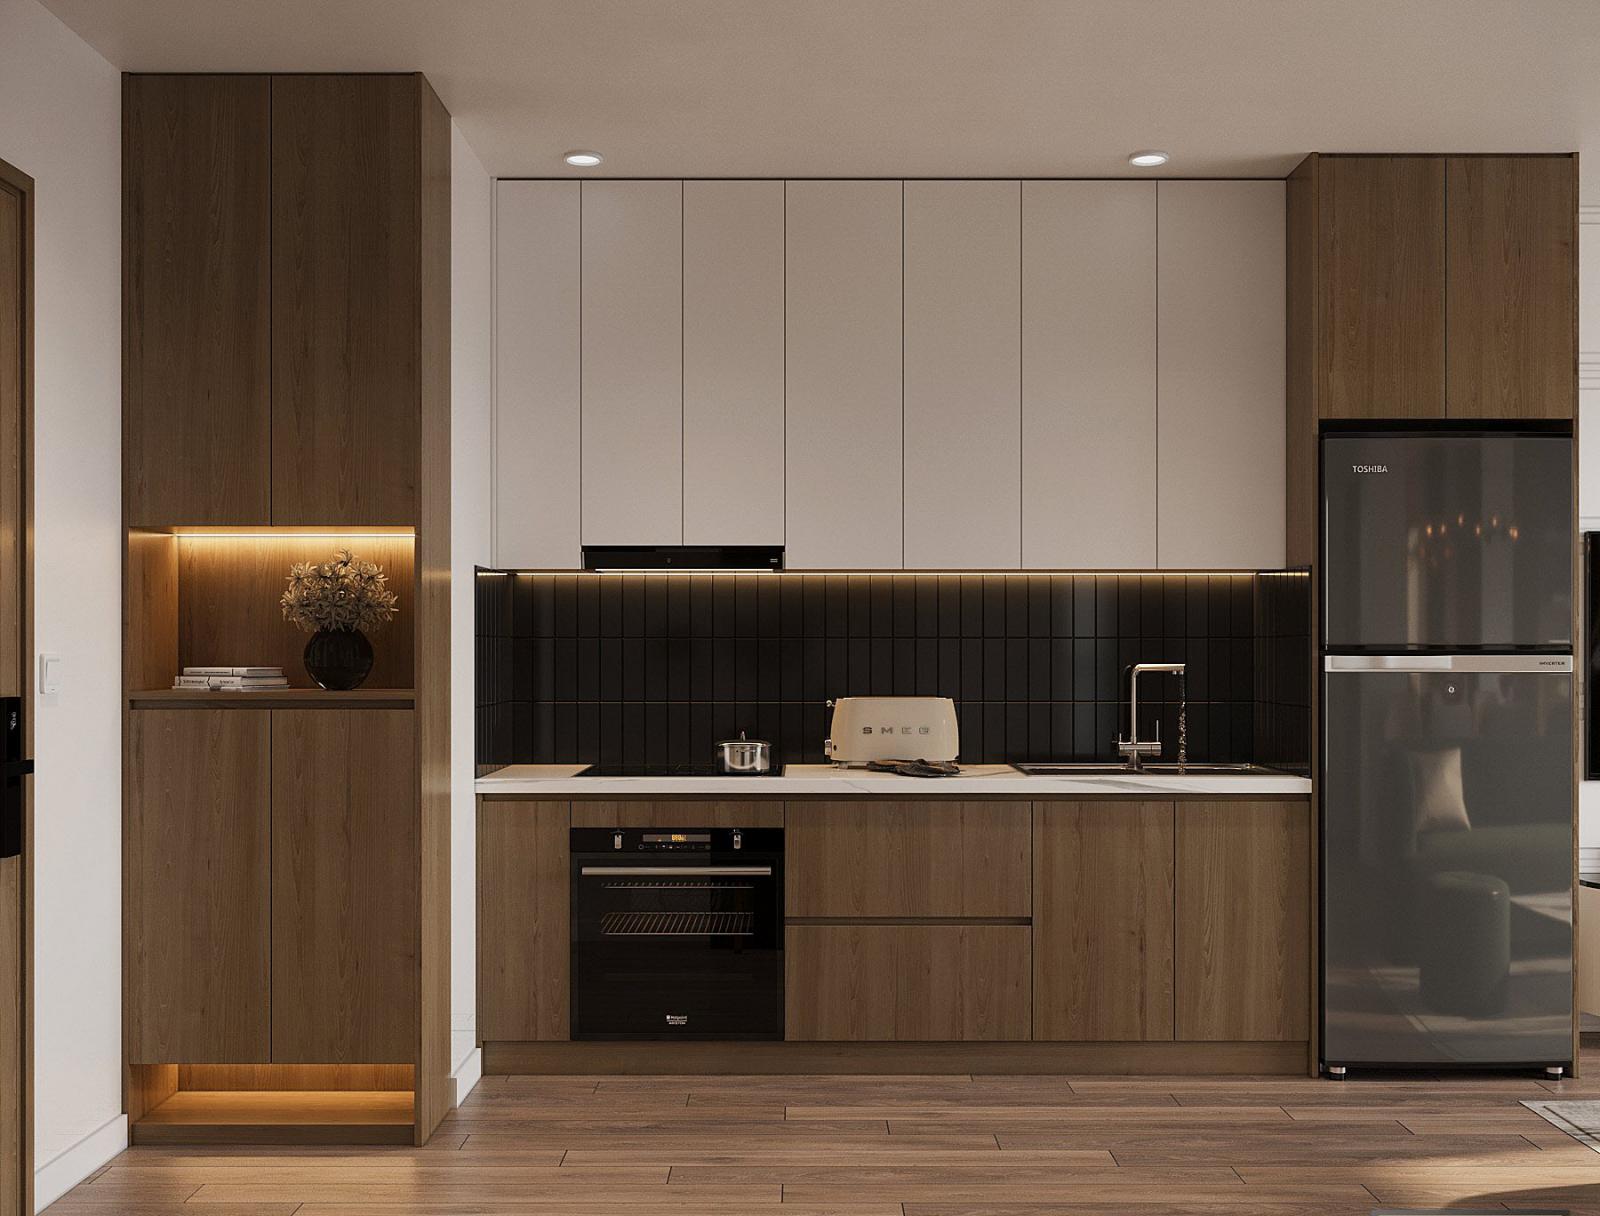 Không gian bếp được thiết kế gọn đẹp và đầy đủ tiện ích hiện đại trên một mảng tường.